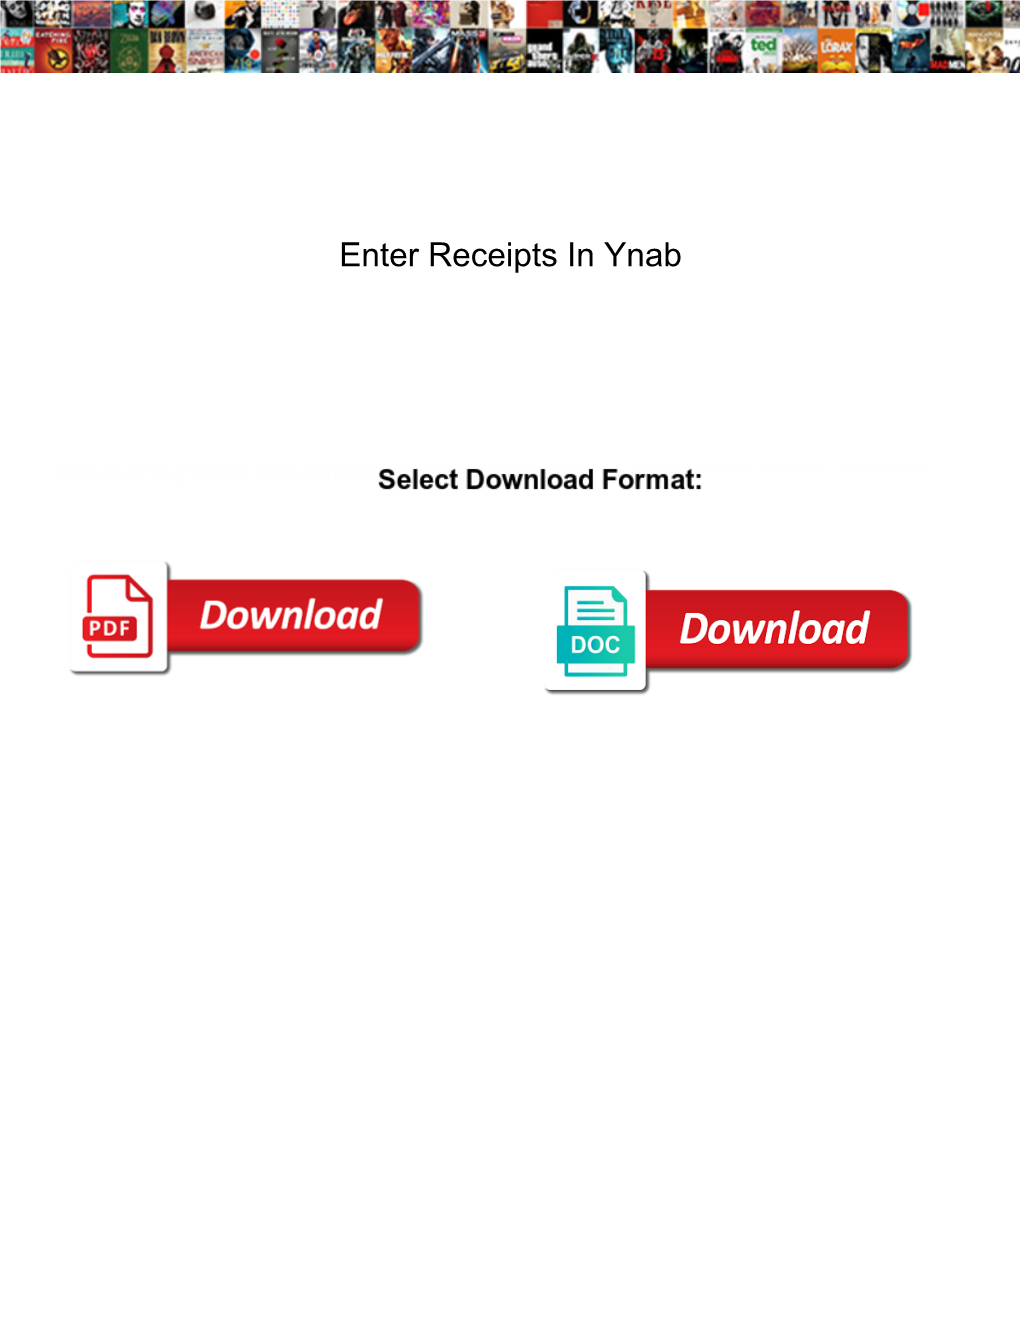 Enter Receipts in Ynab